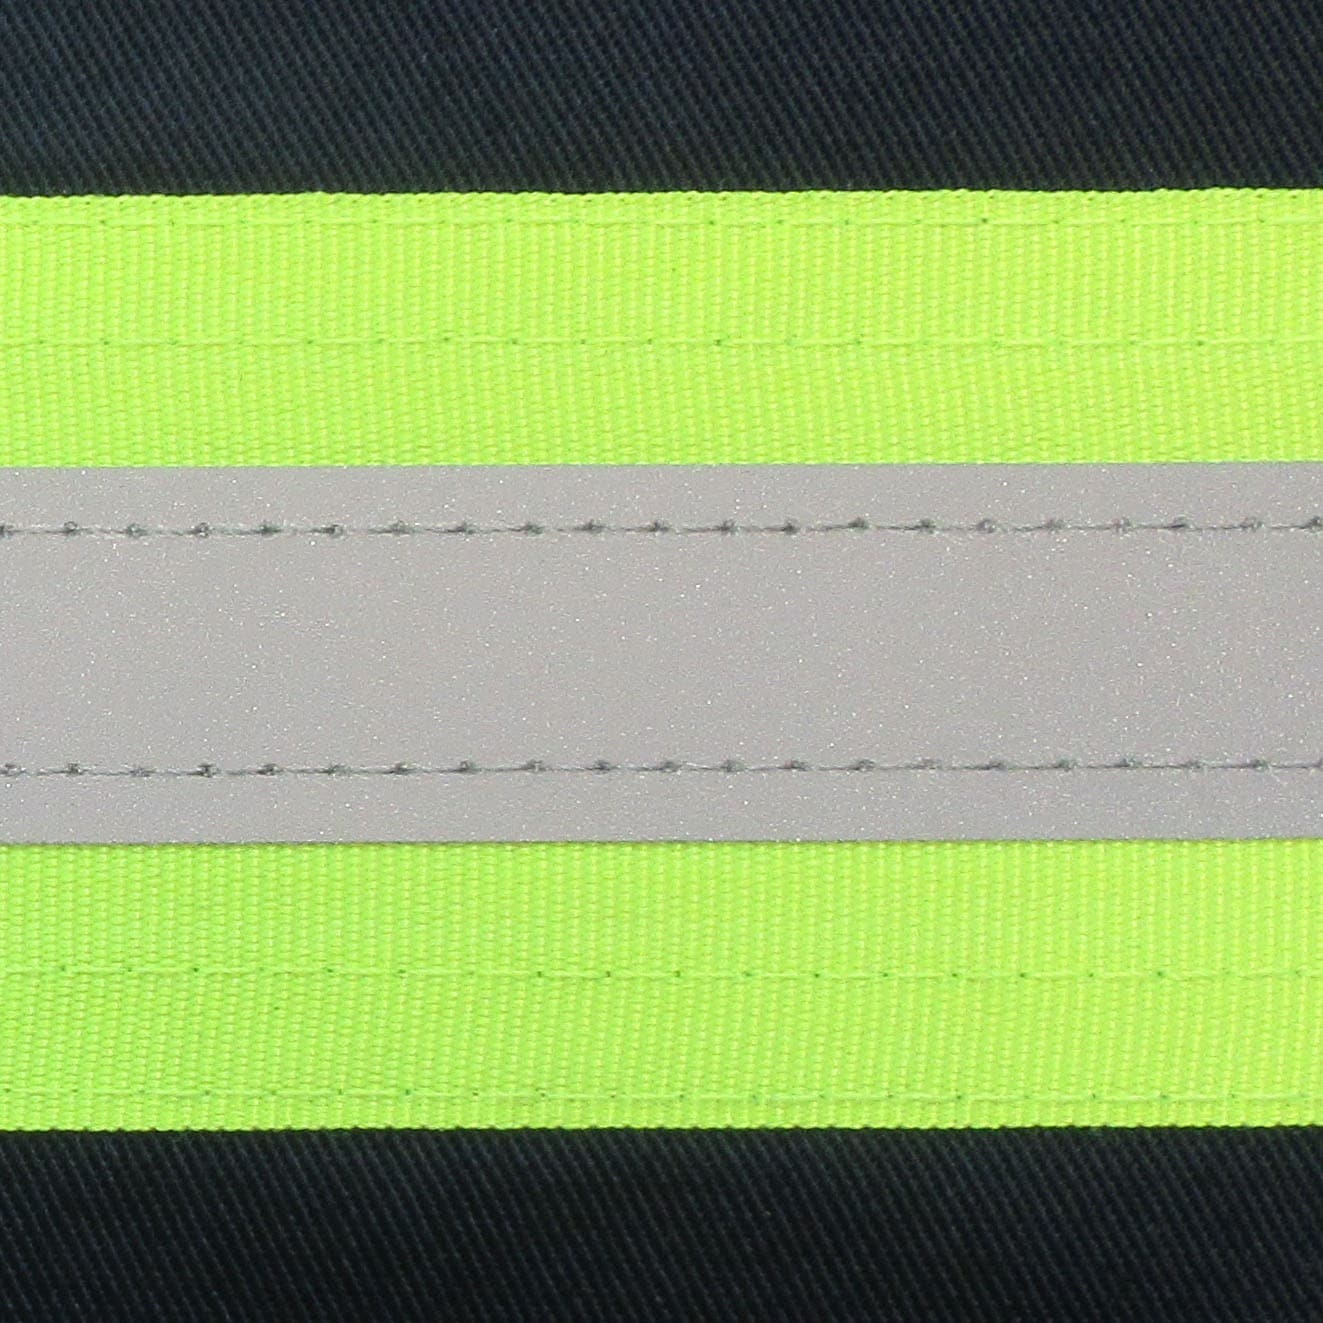 Camisa de 70-200R con bandas reflectantes.